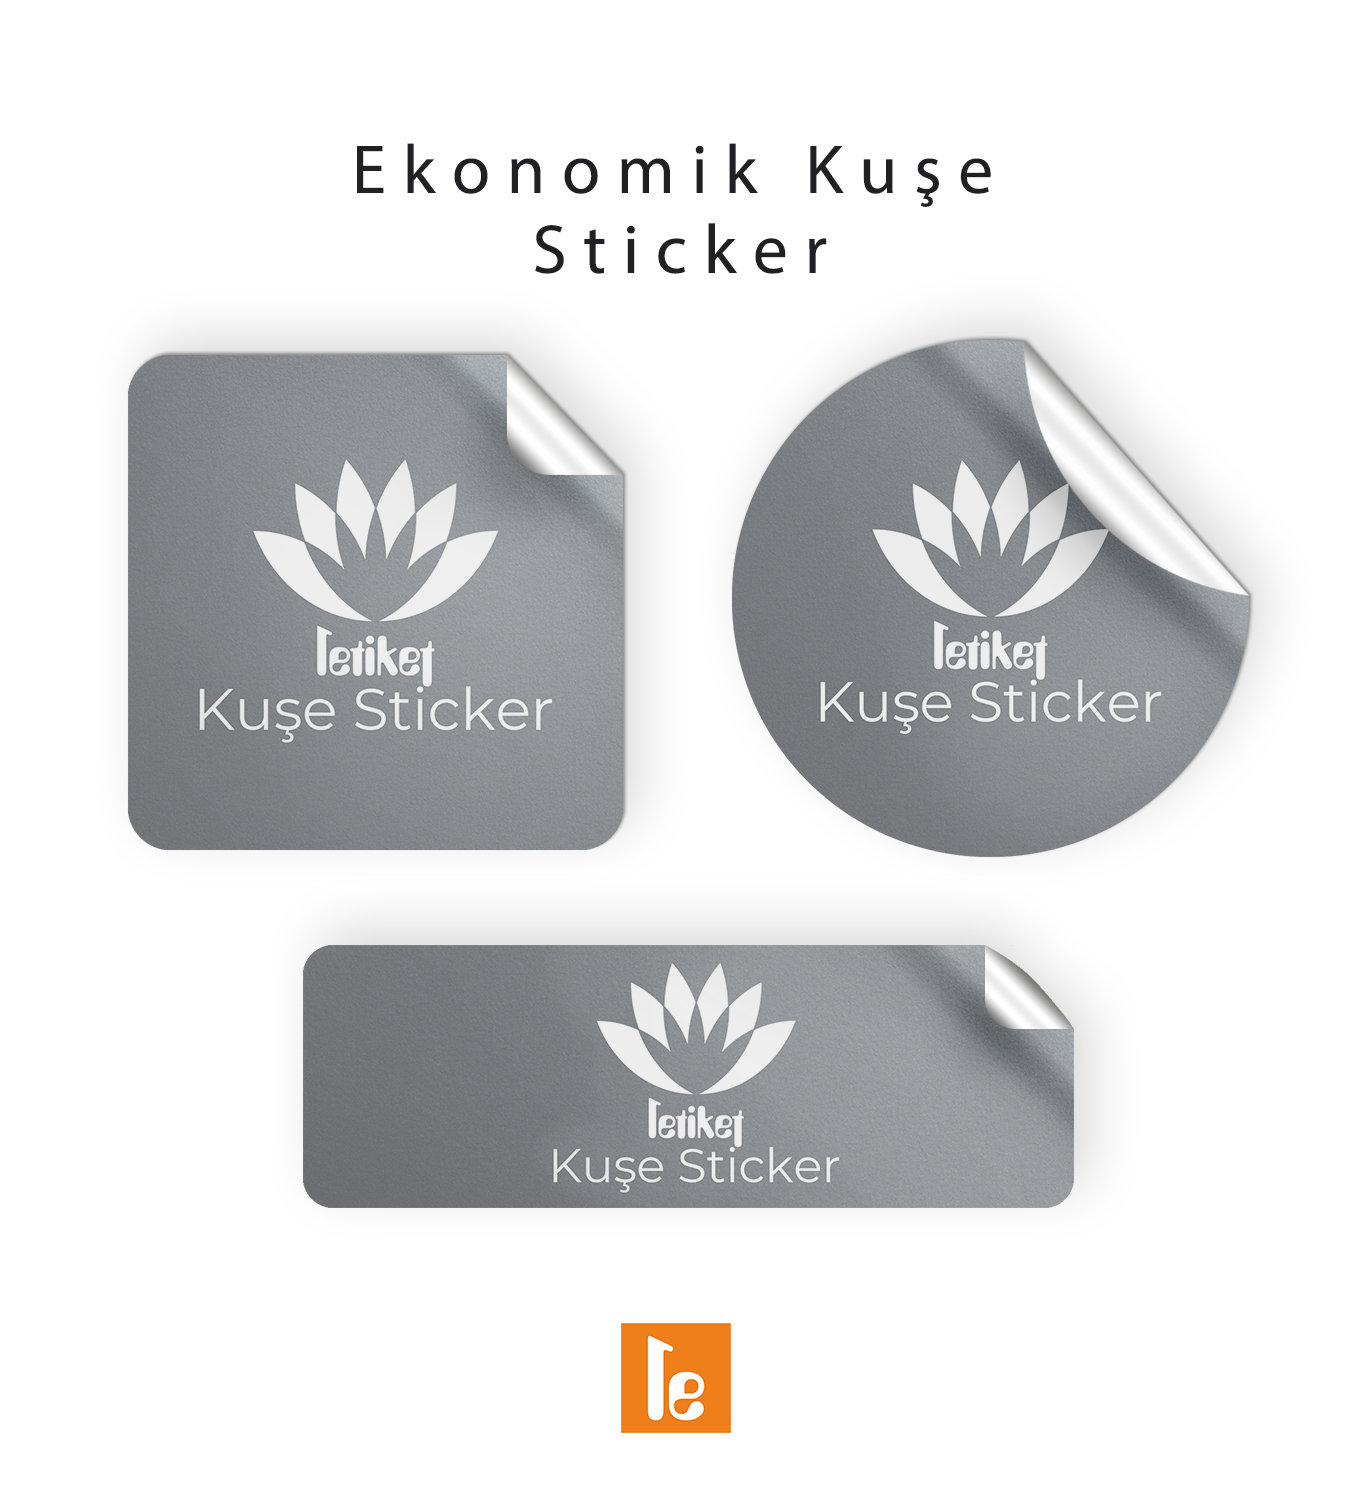 20.8×32.8 cm Ekonomik Düz Kesim Sticker/Etiket